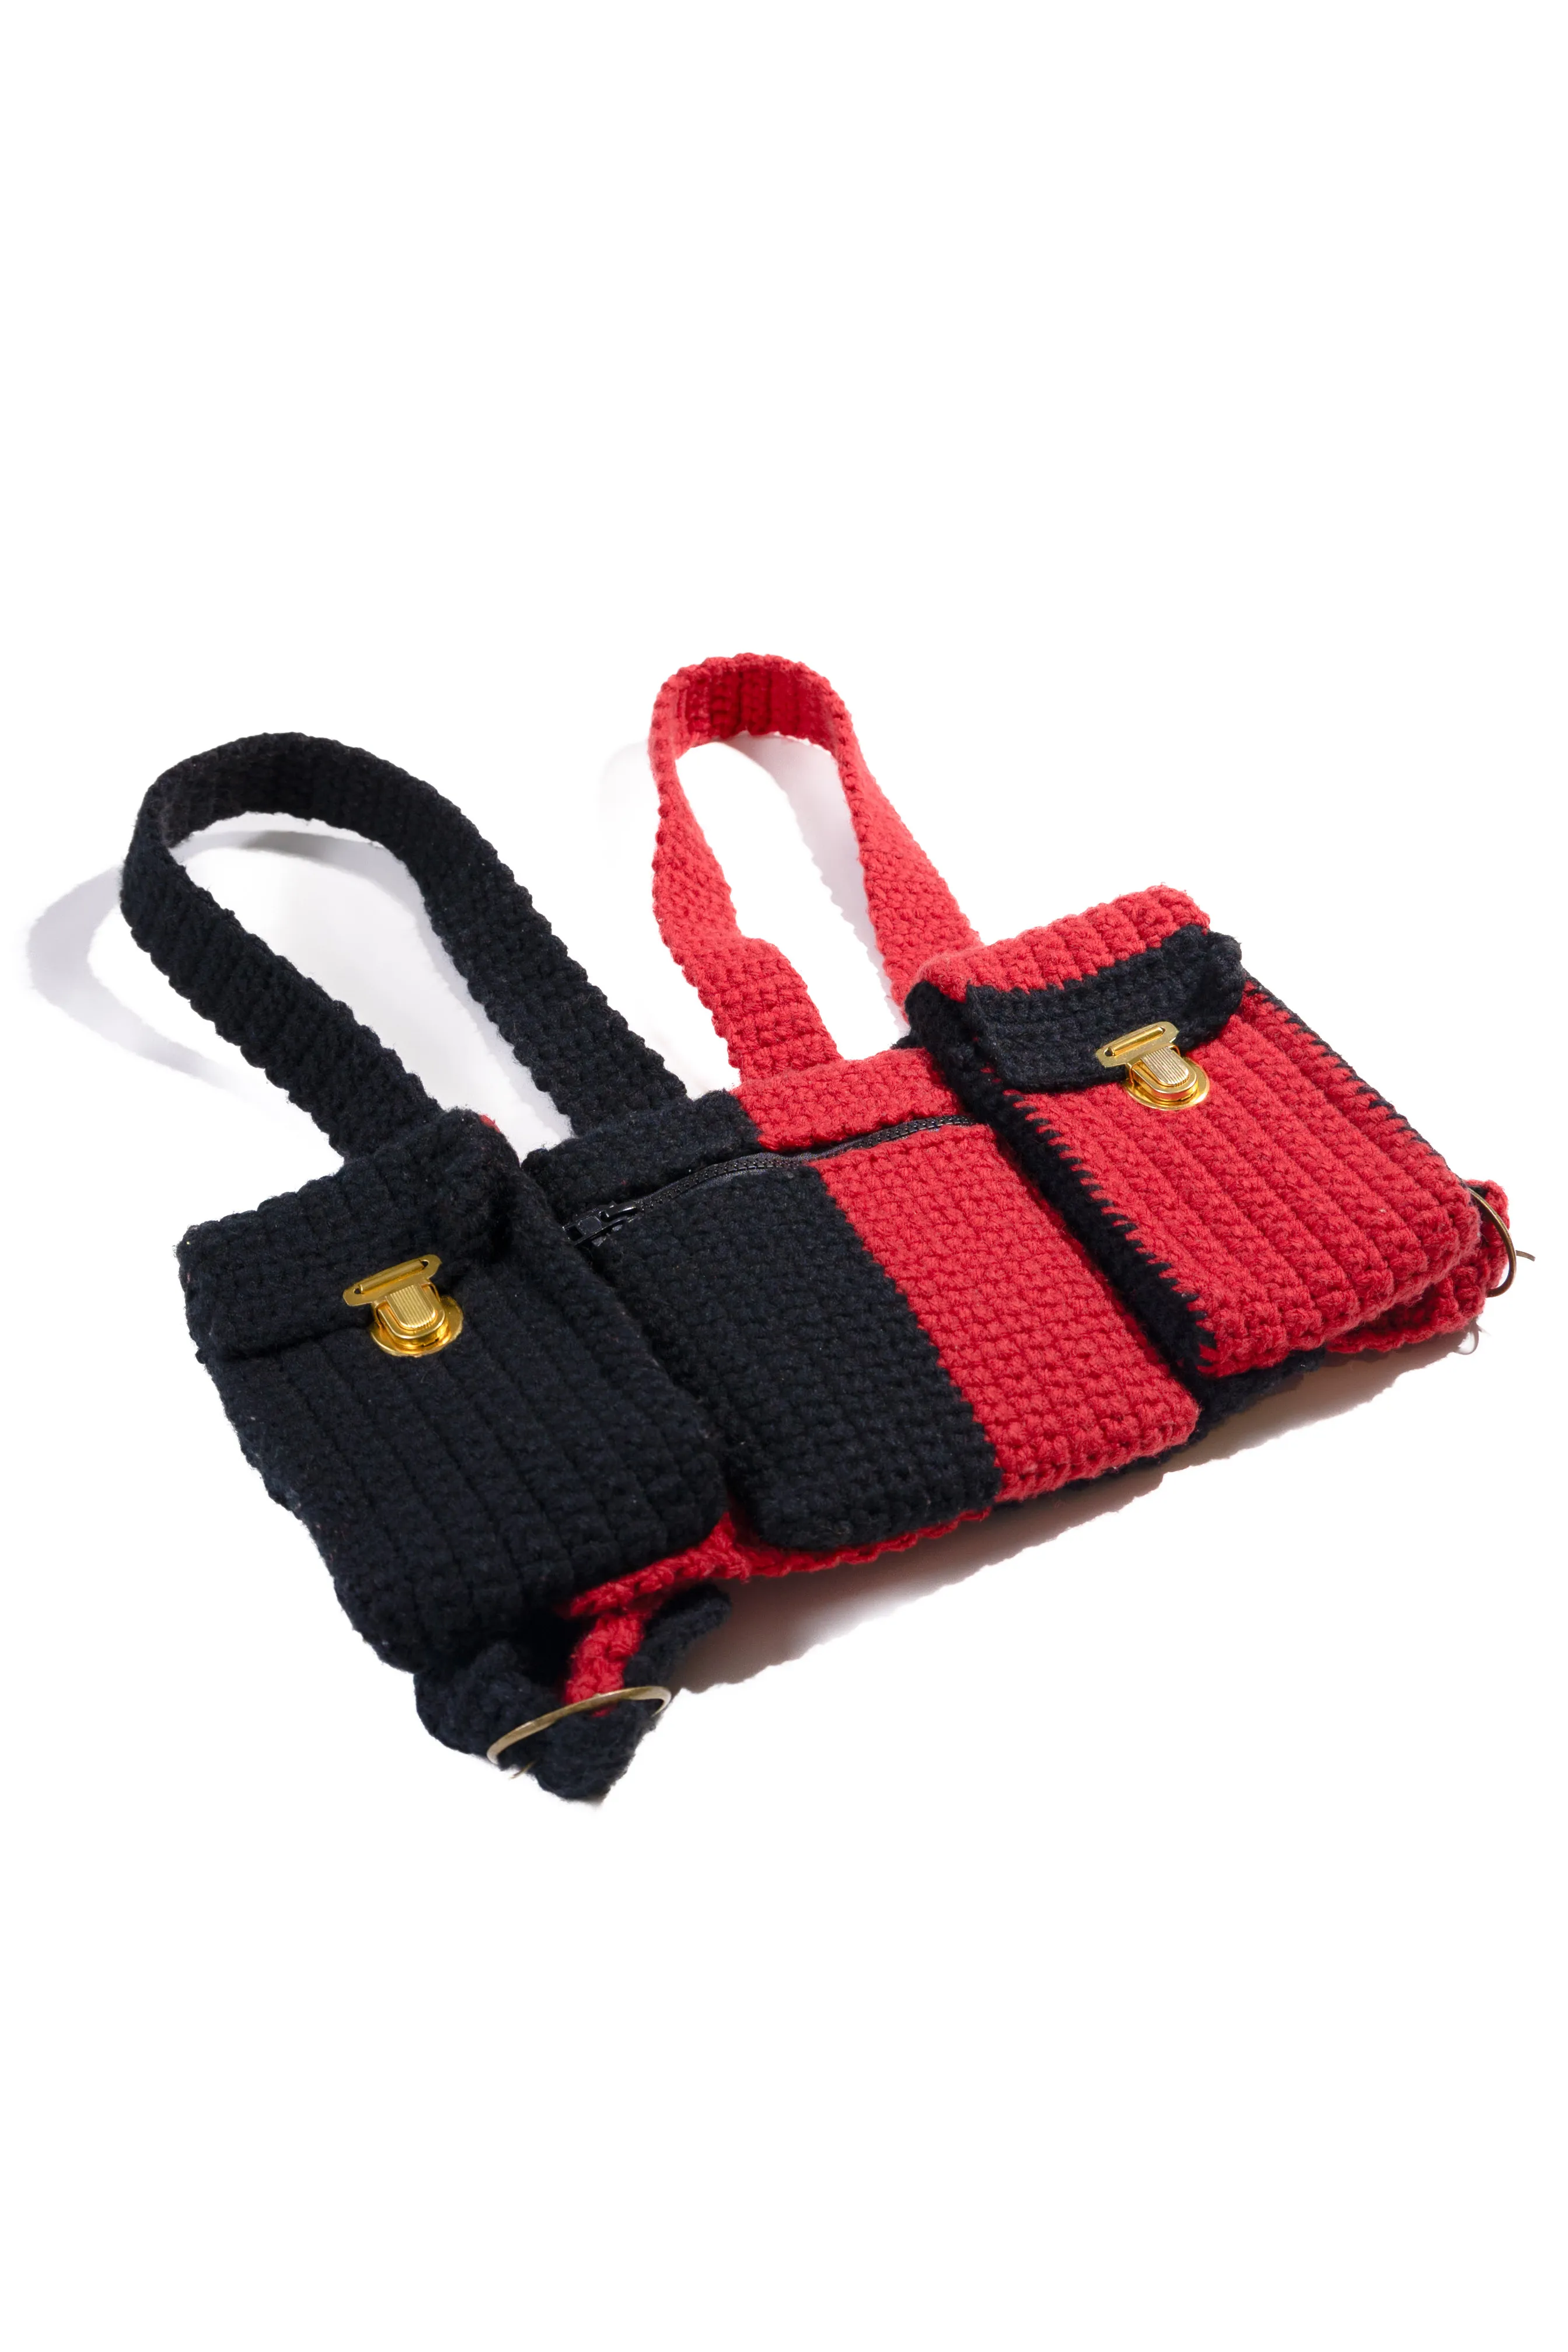 Sturdy TCG Crochet Vest Bag